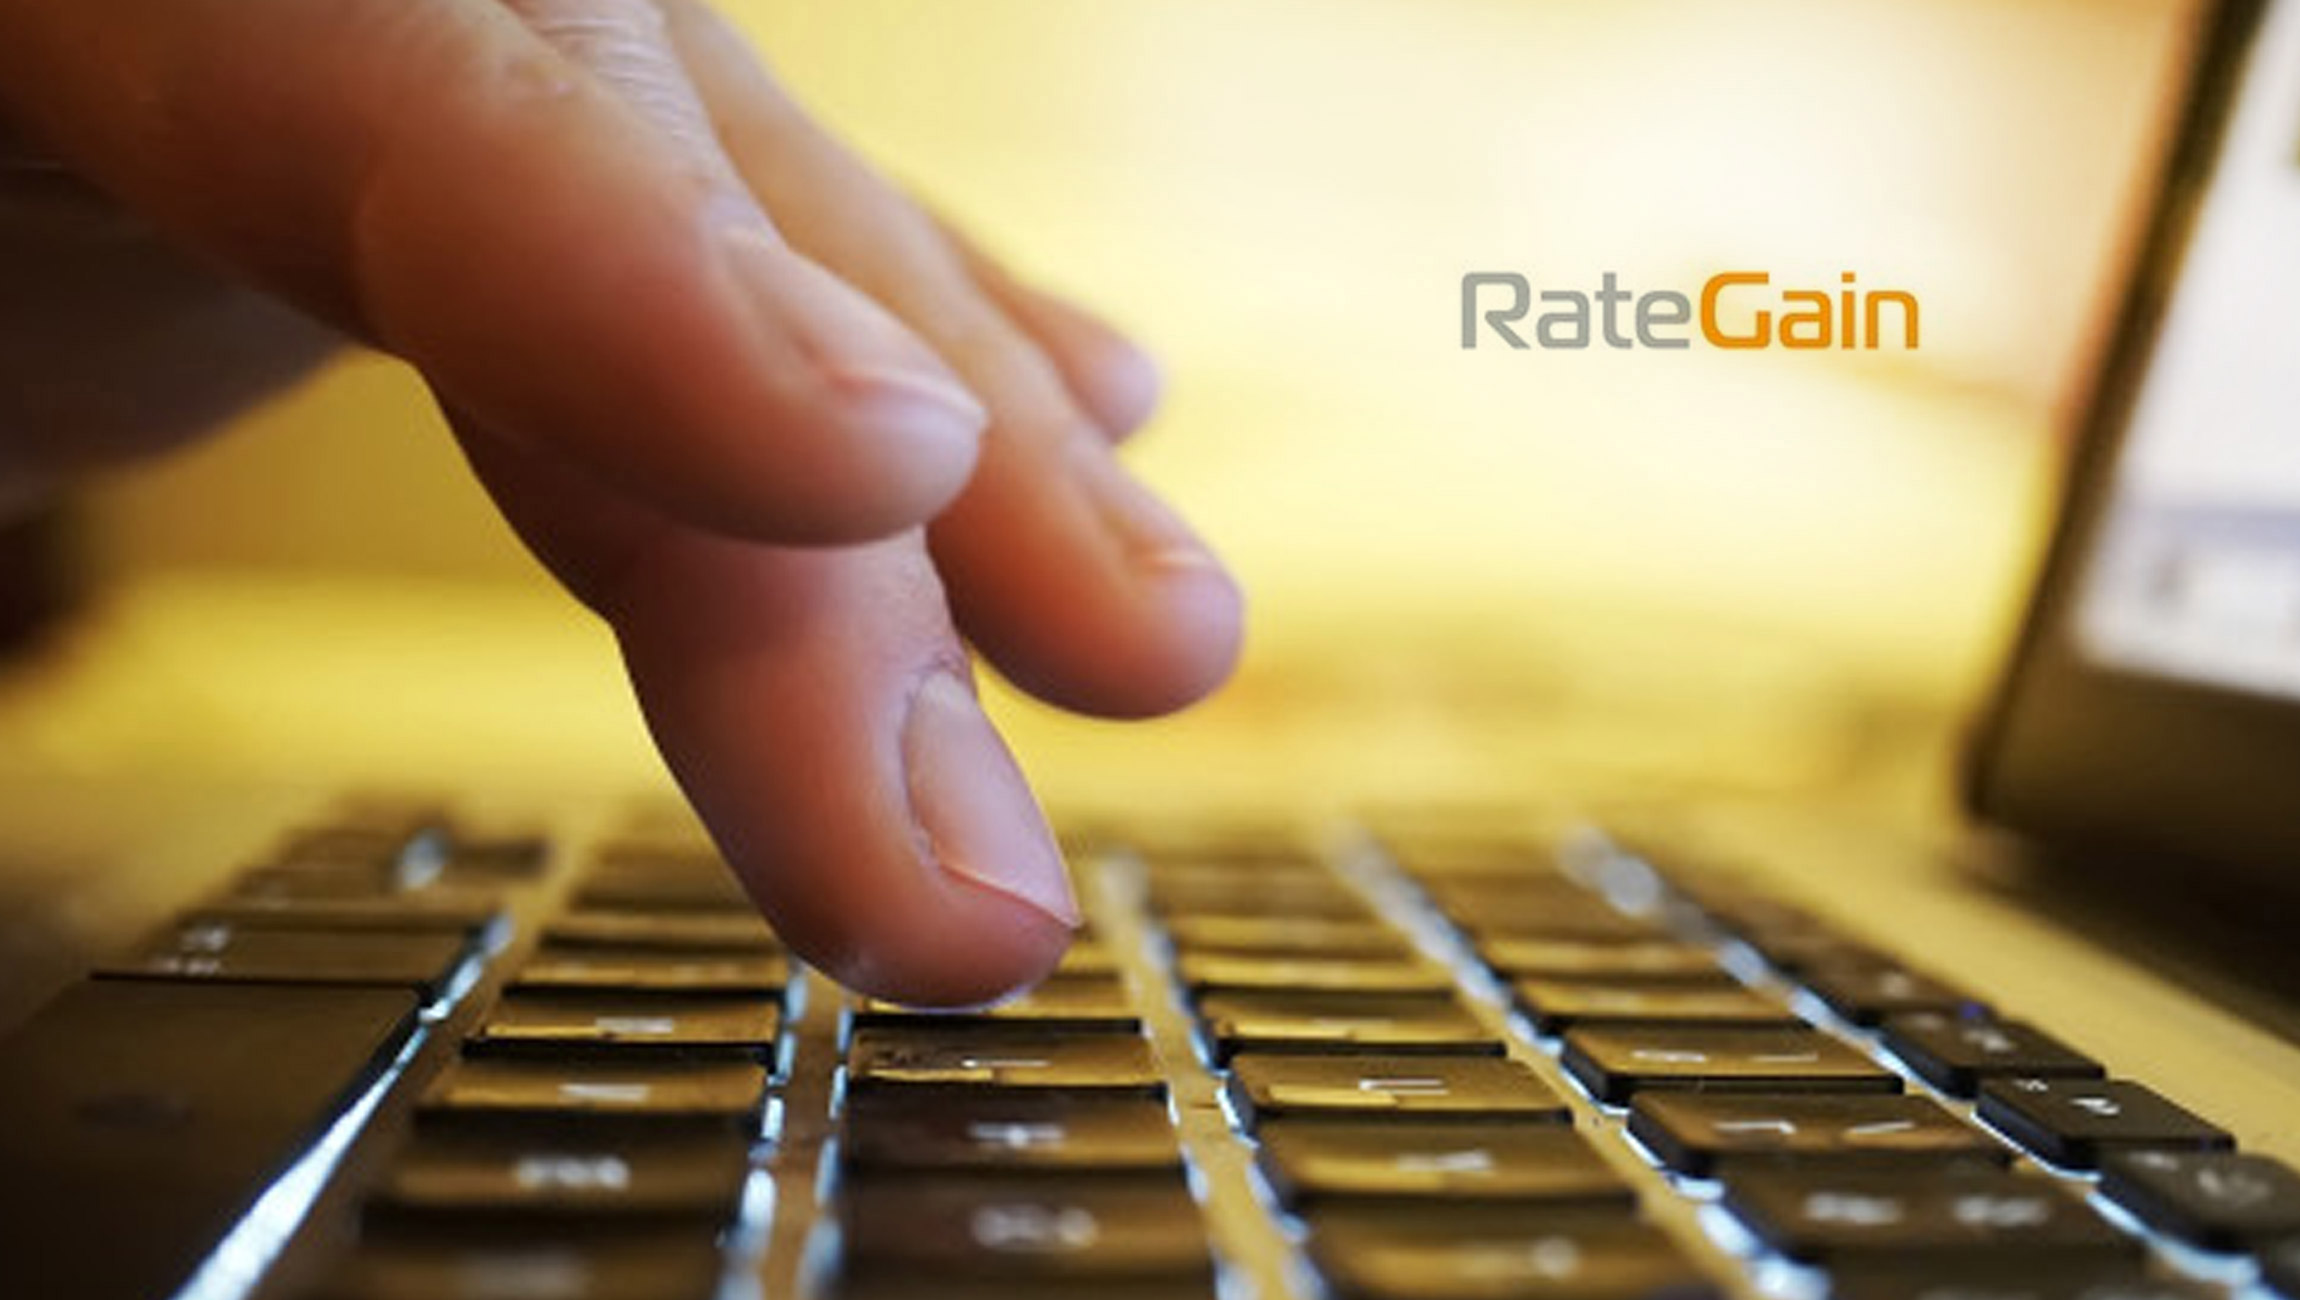 Booking.com Recognizes RateGain as a Premier Connectivity Partner for 2022